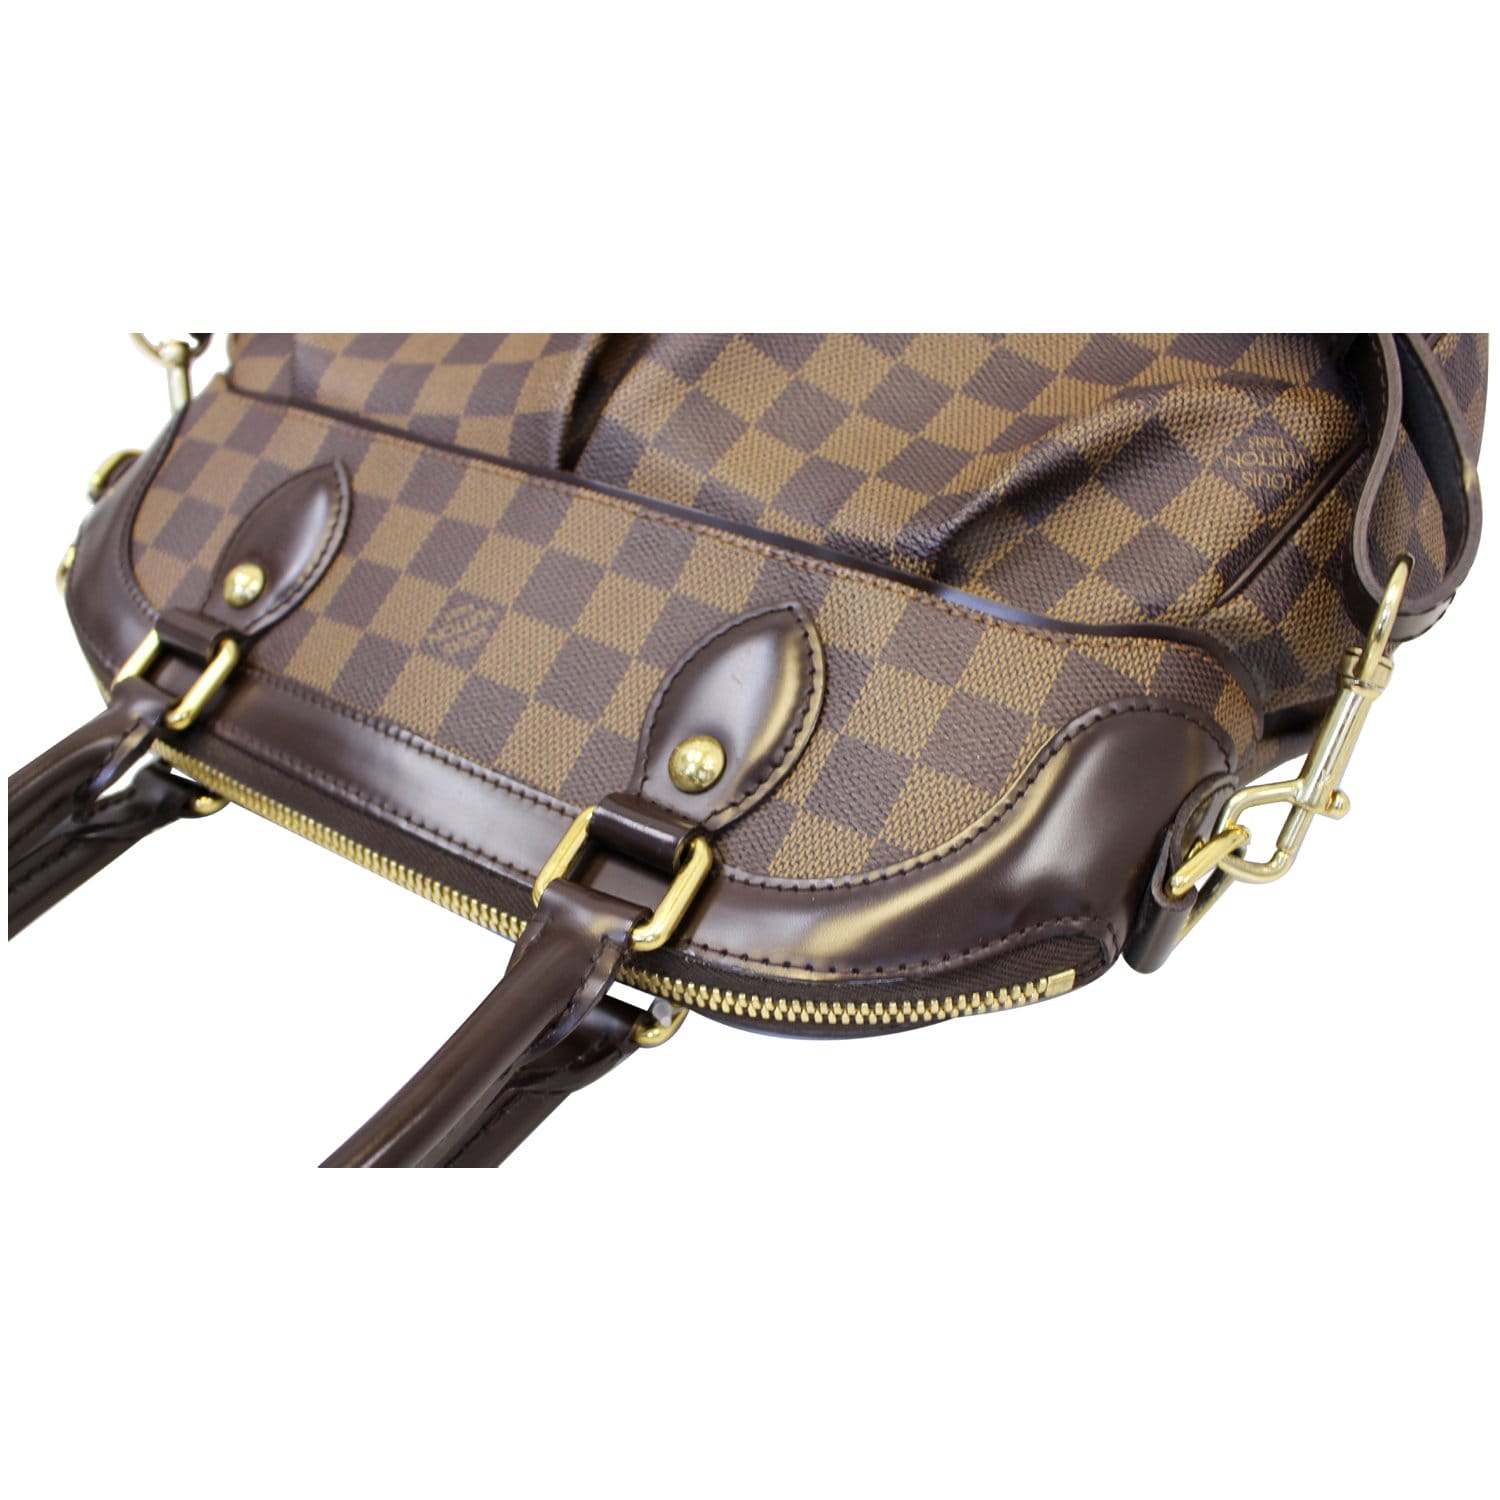 Louis Vuitton Damier Ebene Trevi PM Satchel Shoulder Handbag